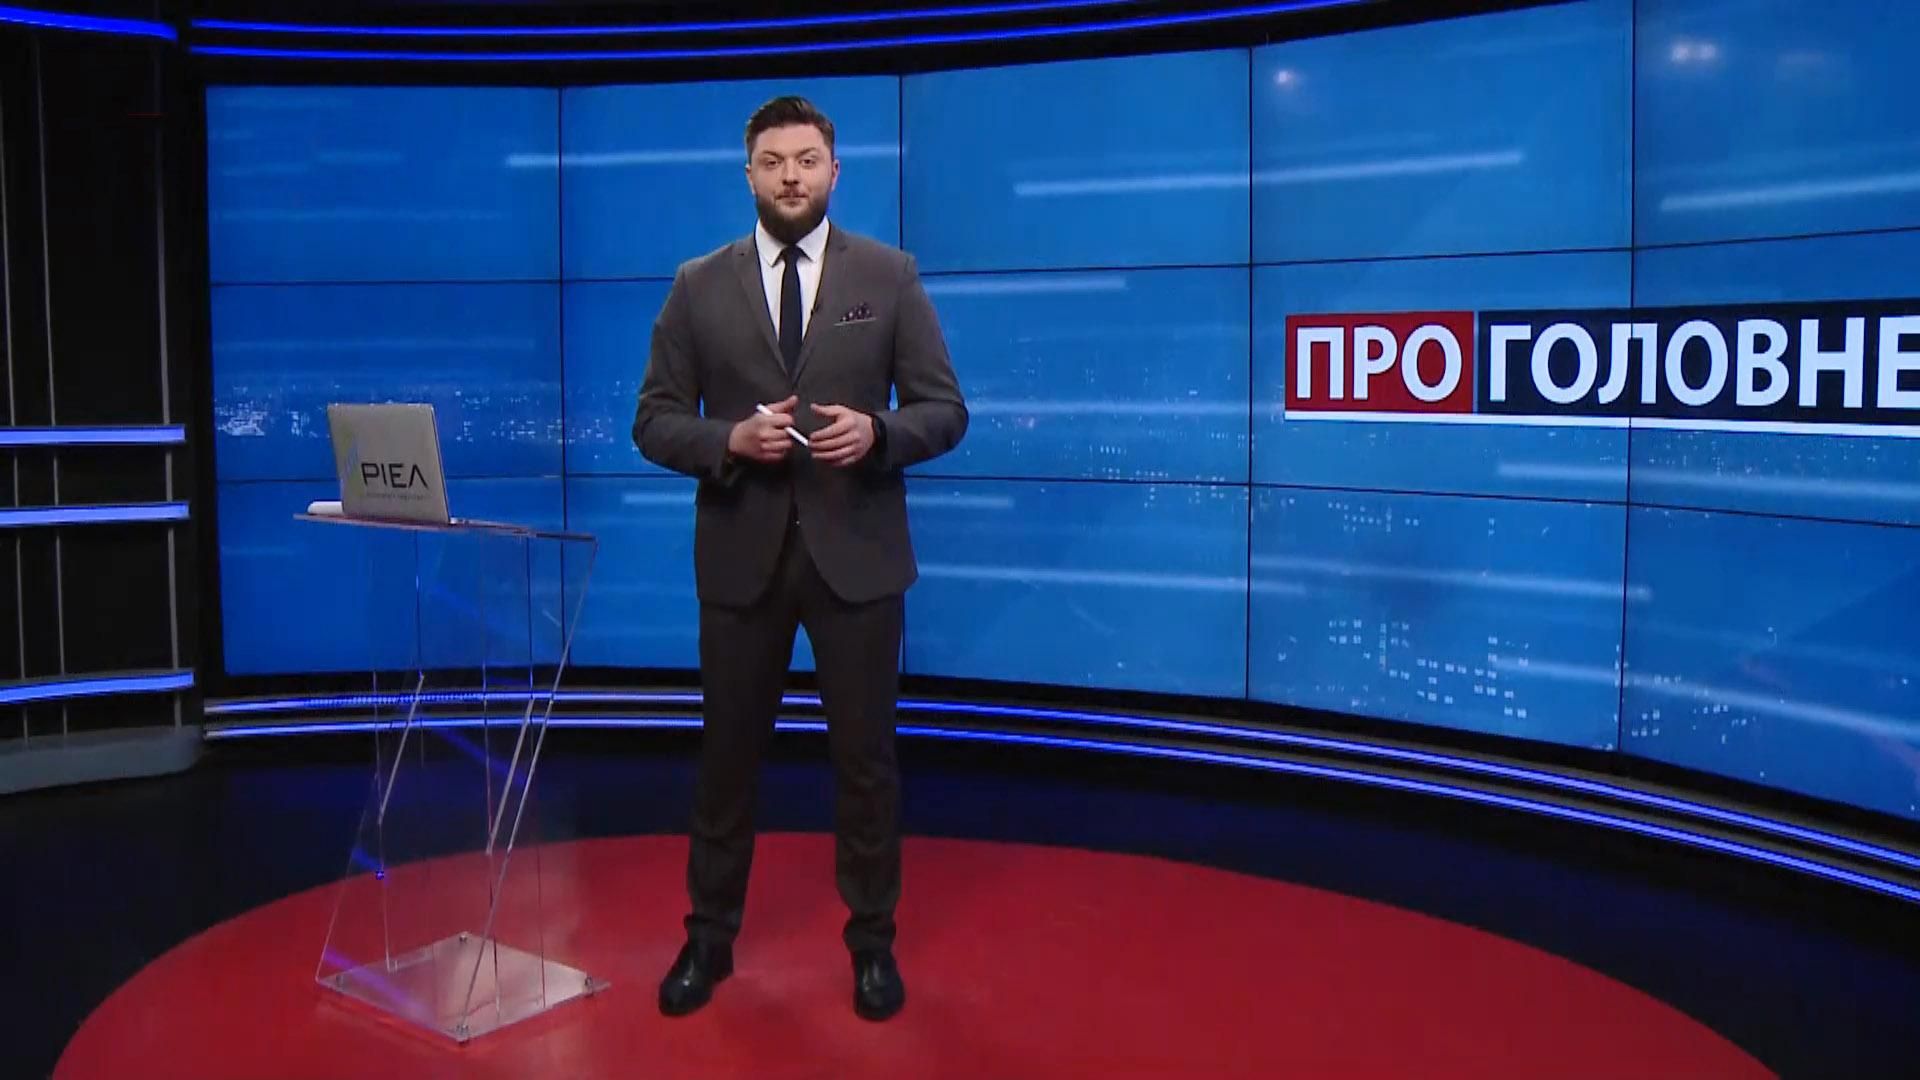 Про головне: Харків перед виборами. Росія звозить зброю на Донбас - Новини Харкова сьогодні - 24 Канал